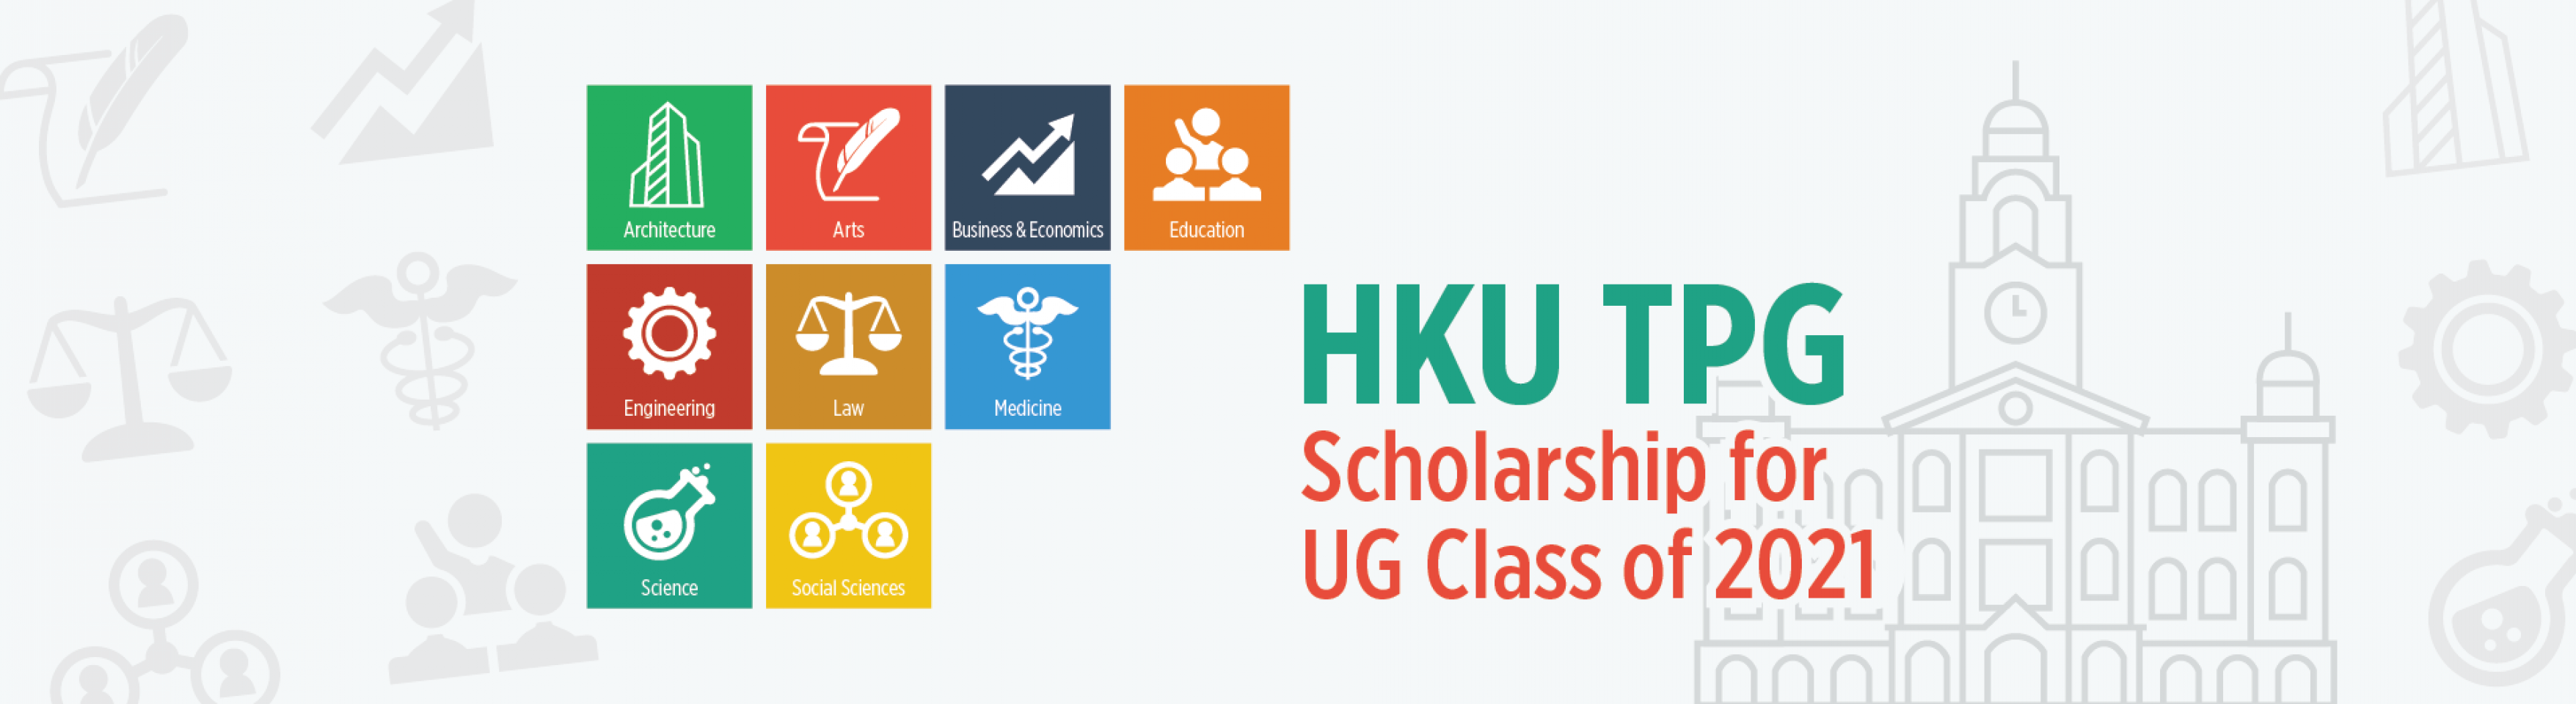 HKU TPG Scholarship for UG Class of 2021